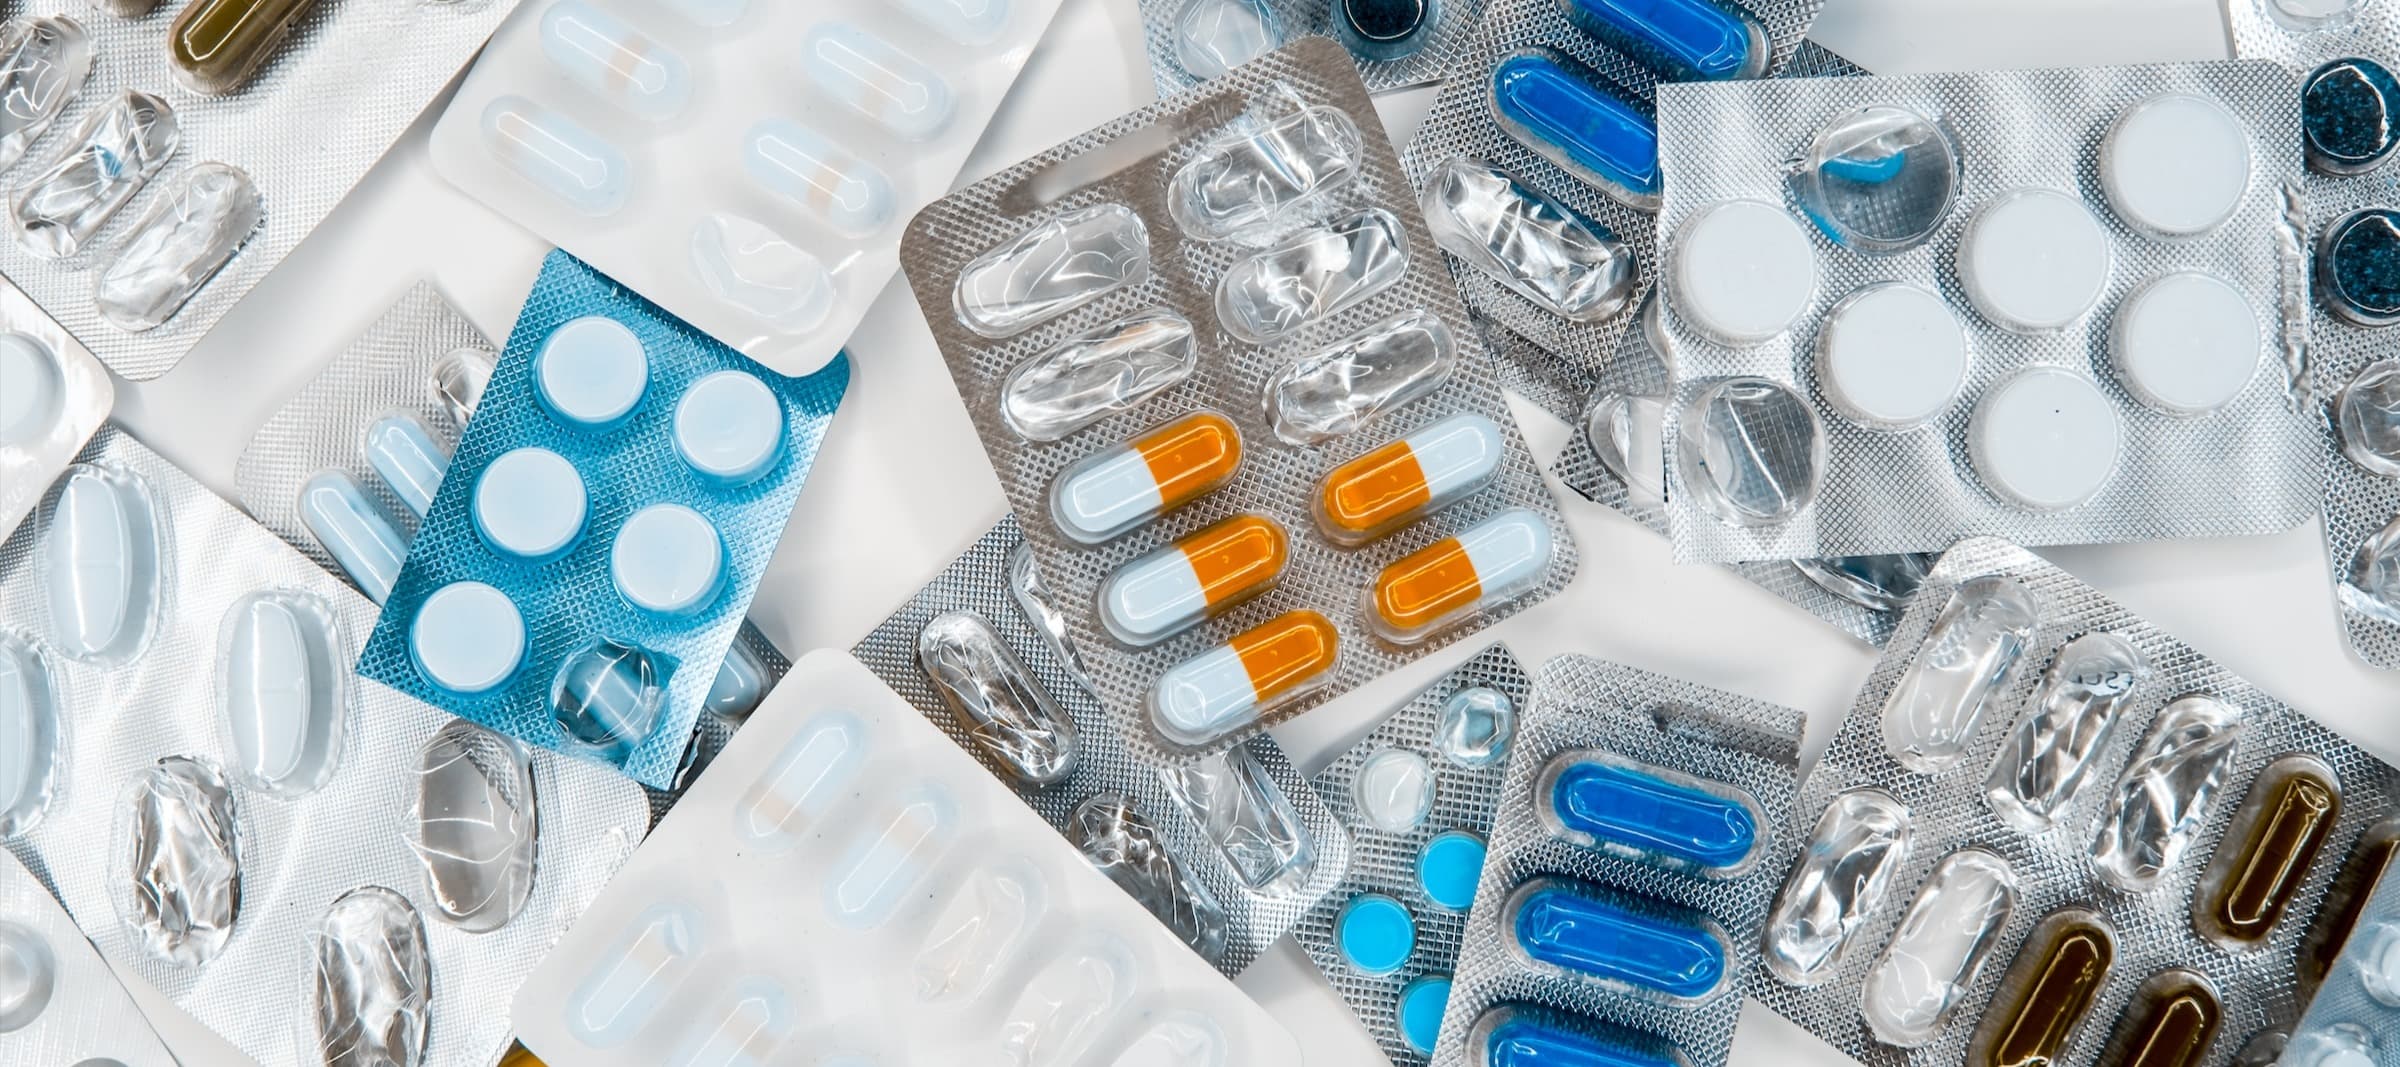 Фото новости: "Аптеки в России могут поднять цены на лекарства на 20%"